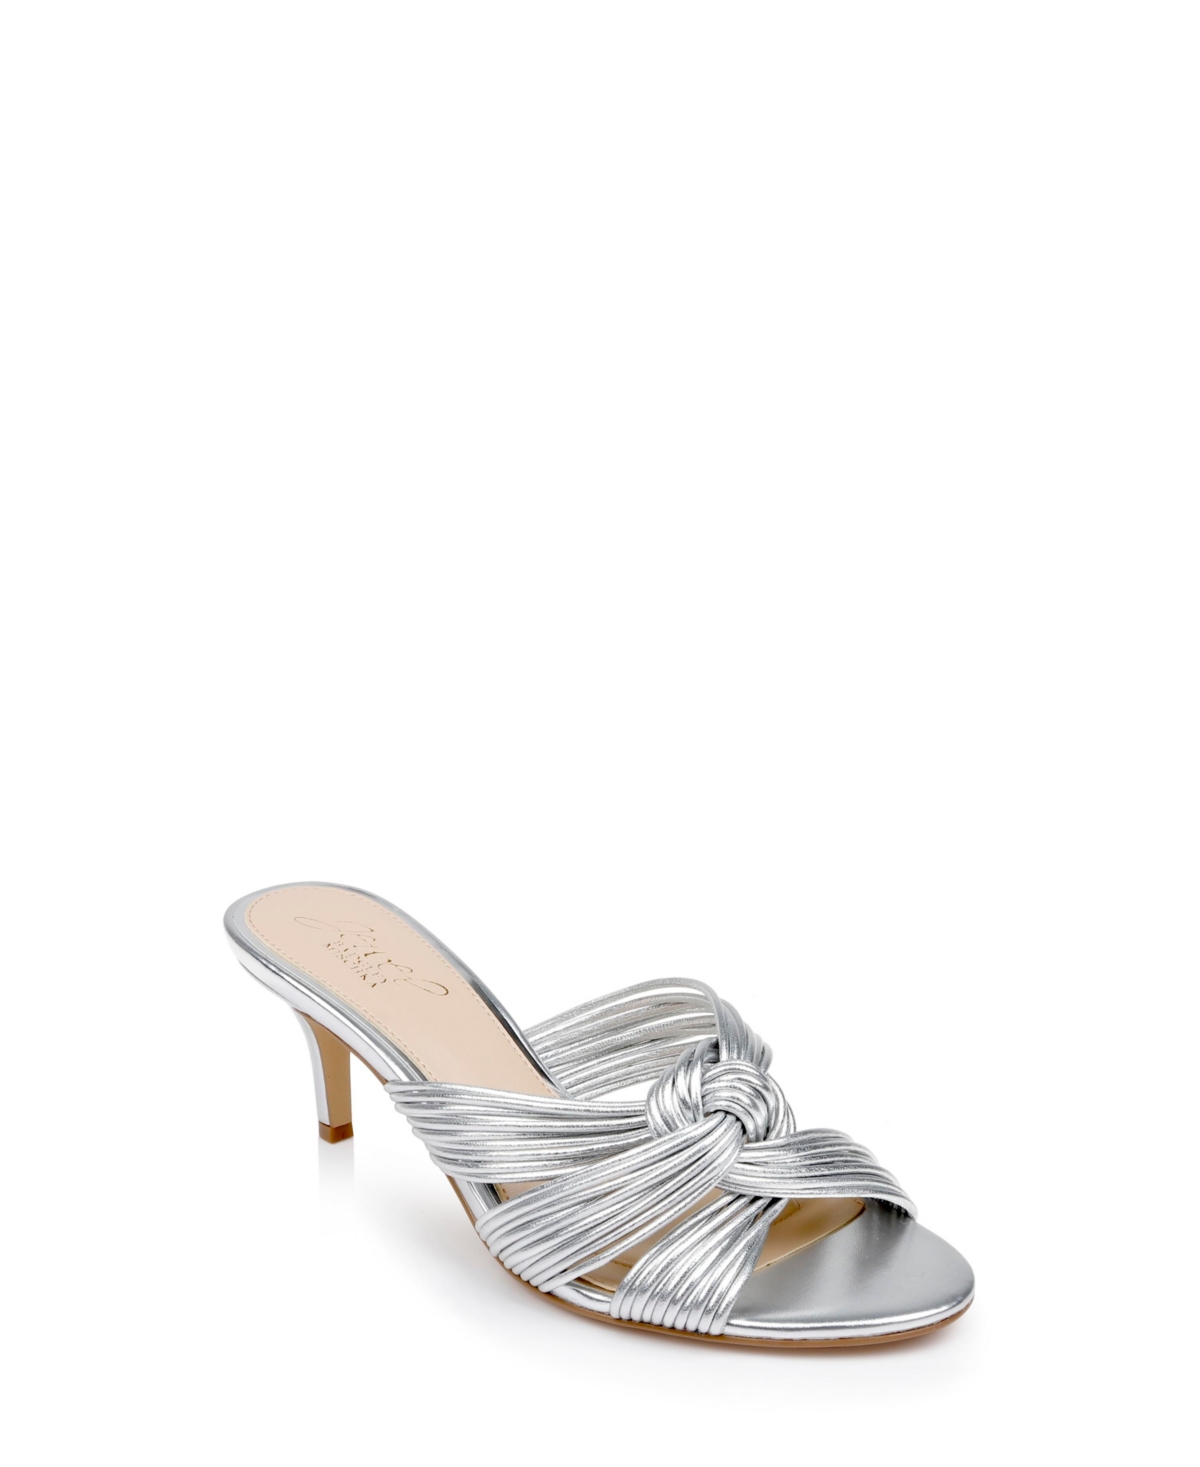 Shop Jewel Badgley Mischka Women's Mia Evening Slide Sandals In Silver Metallic